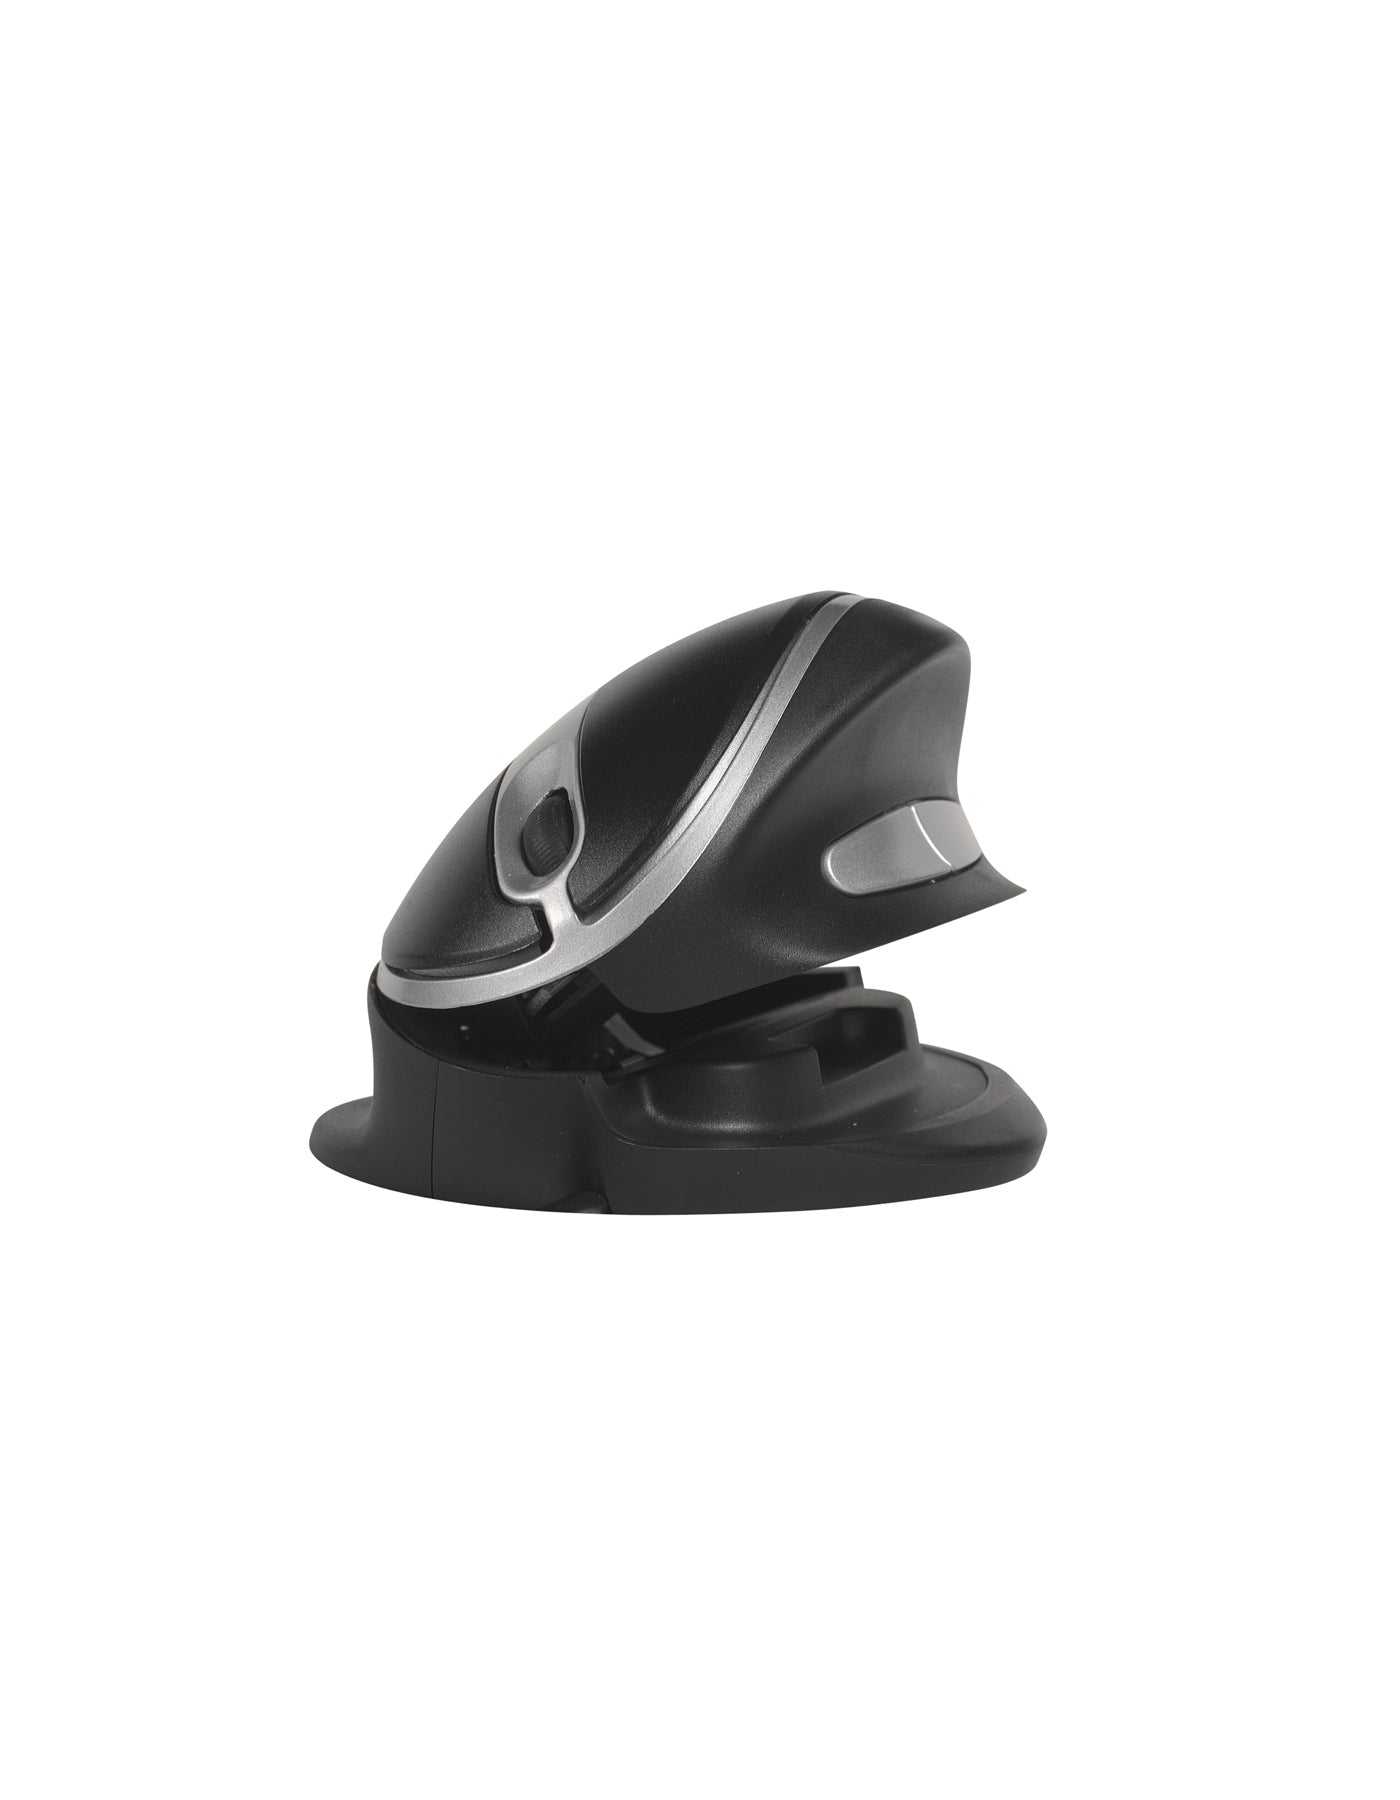 Oyster Maus Wireless Vertikal Einstellbar Rechts- und Linkshändiges Arbeiten